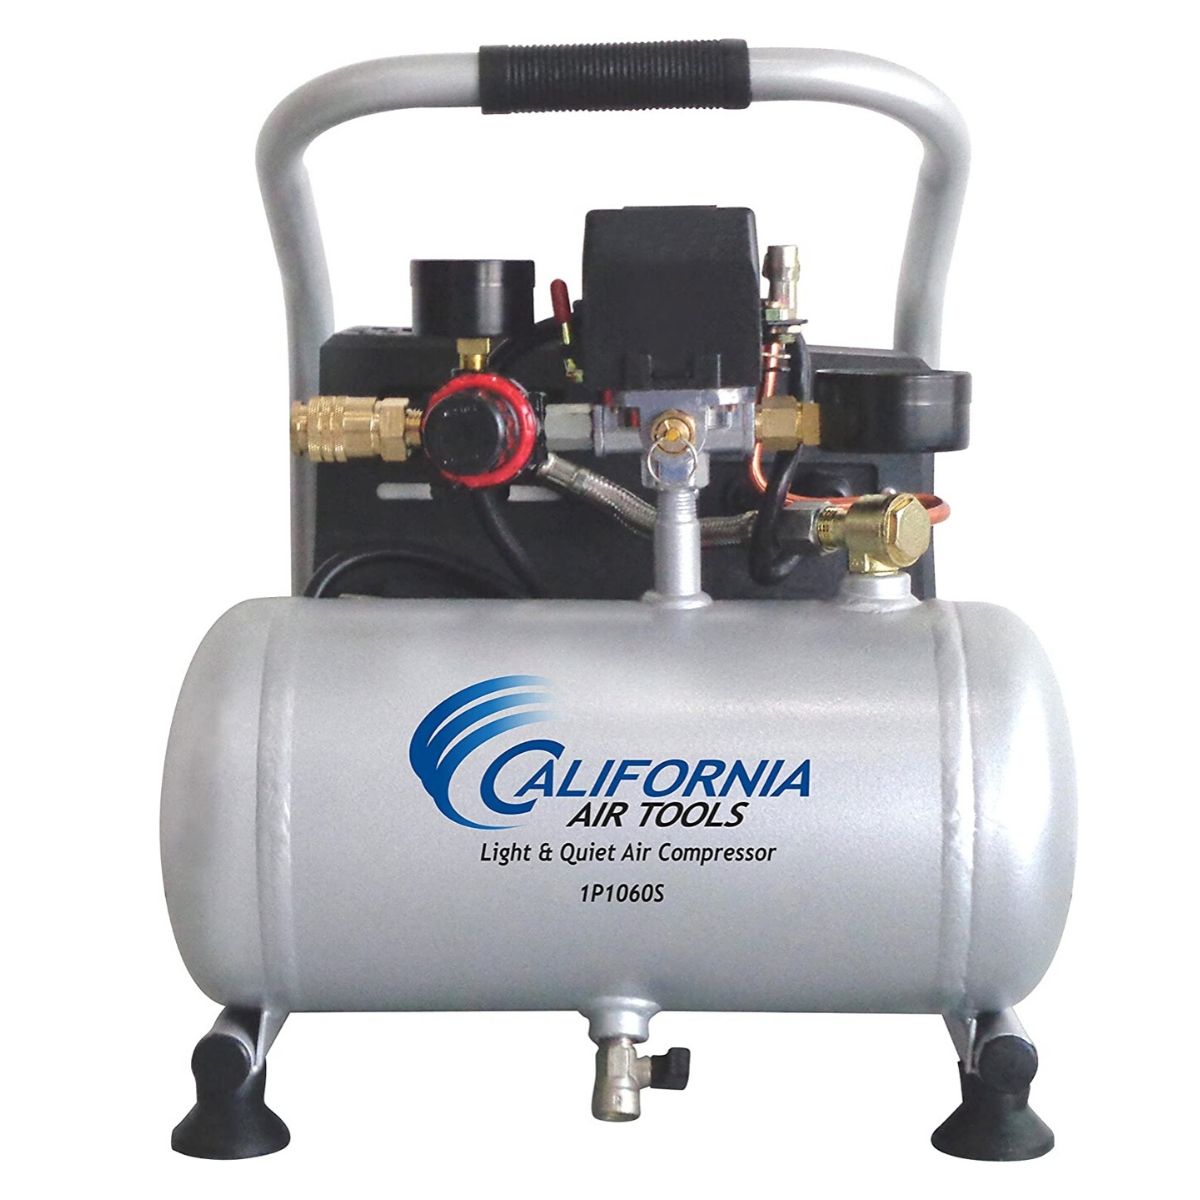 California Air Tools 1P1060S Portable Air Compressor